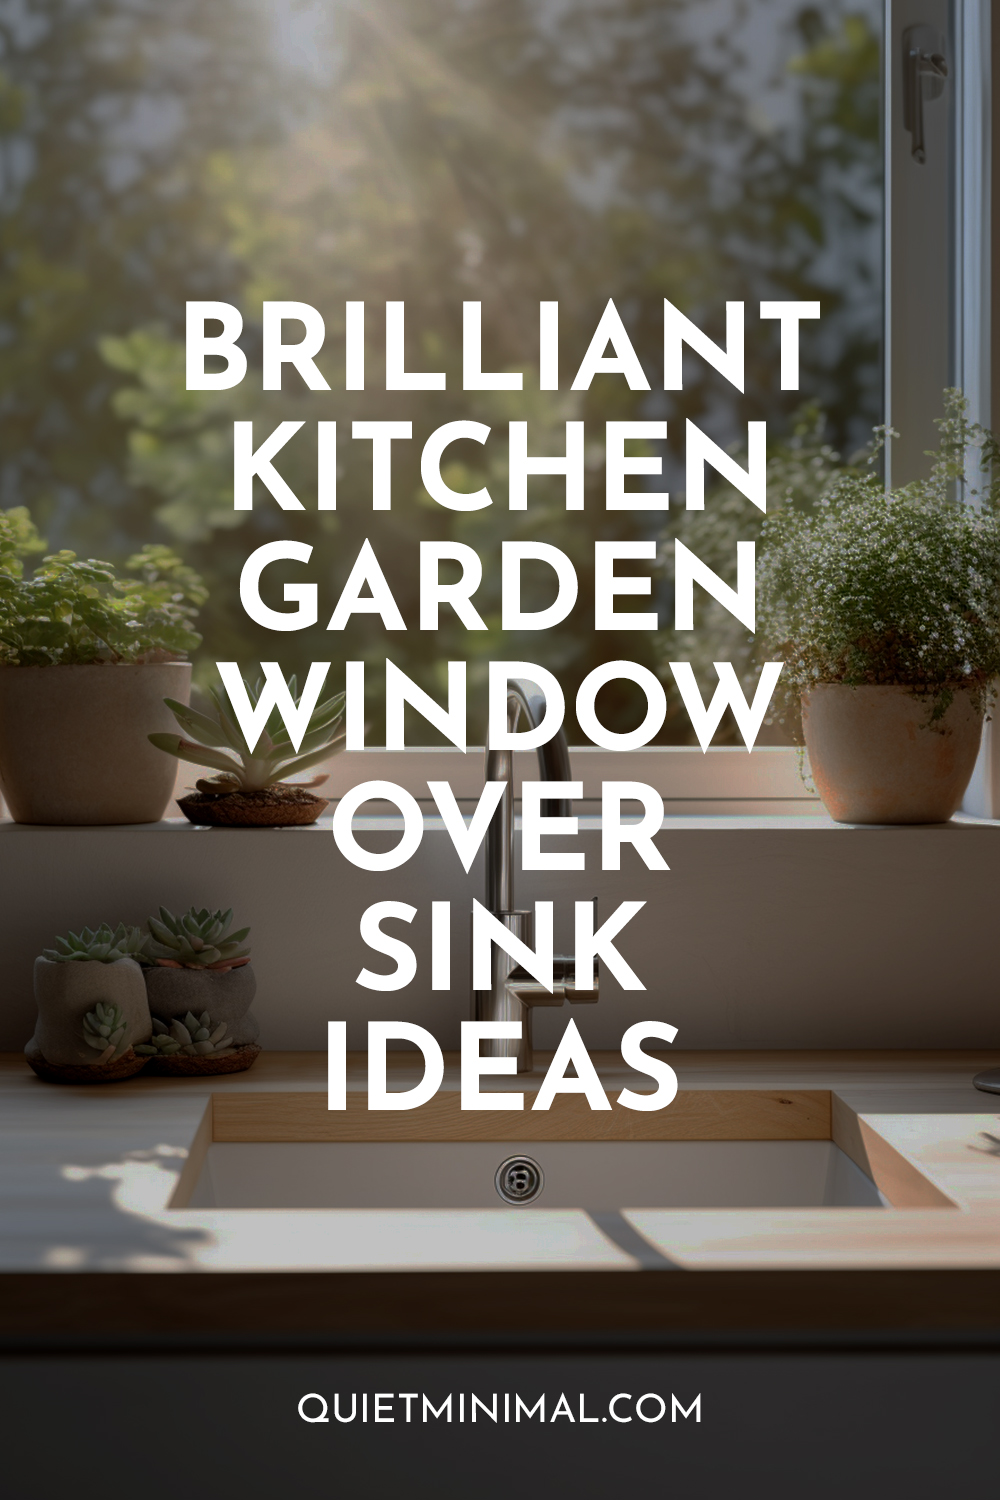 Kitchen Garden Window Over Sink Ideas.